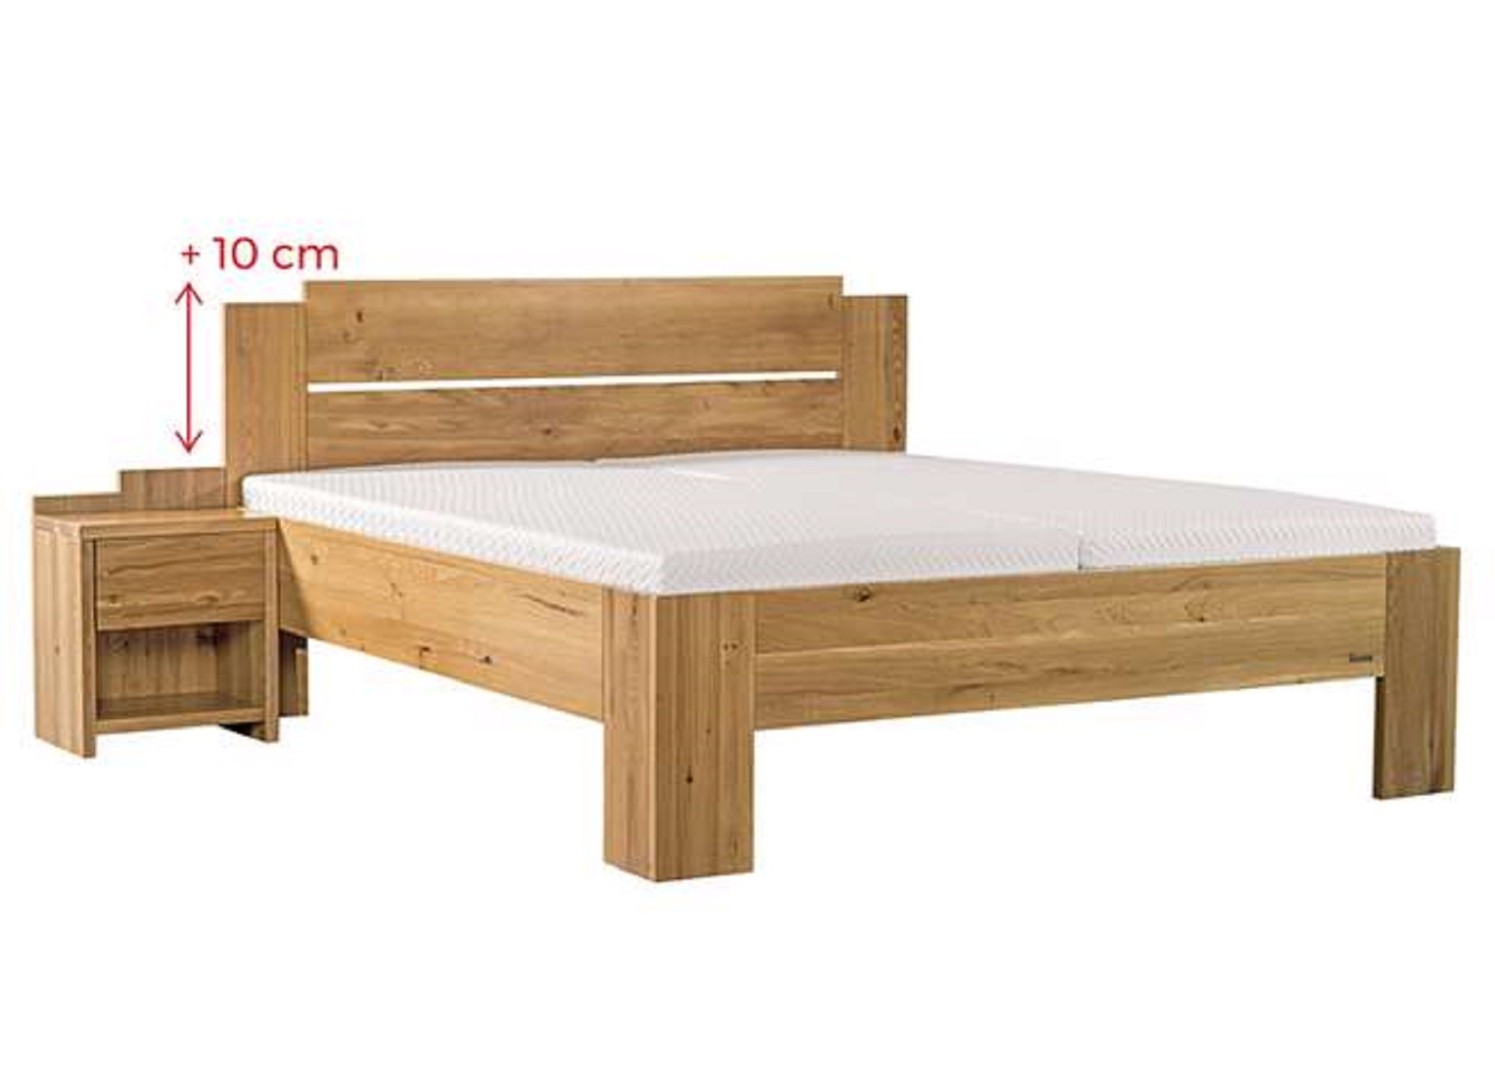 Ahorn GRADO MAX - masivní dubová postel se zvýšeným čelem 80 x 190 cm, dub masiv